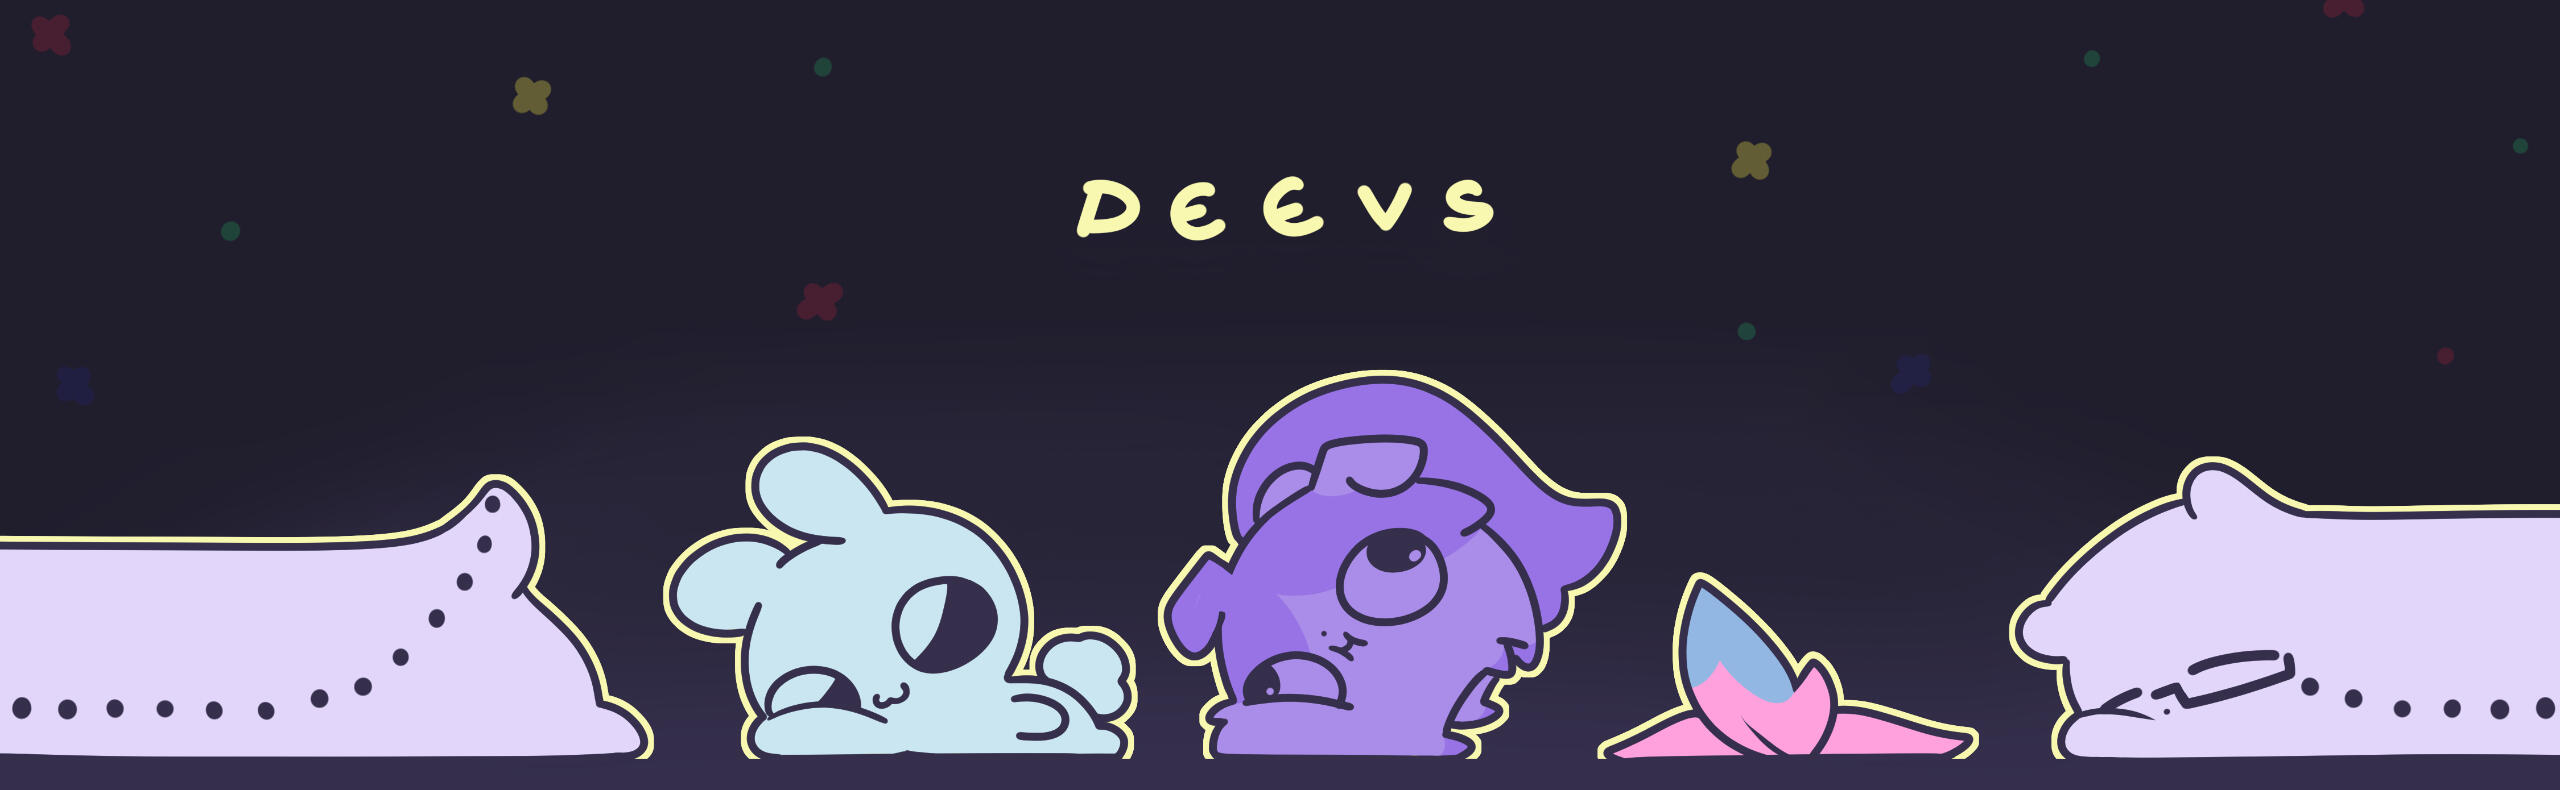 banner of deevs creatures